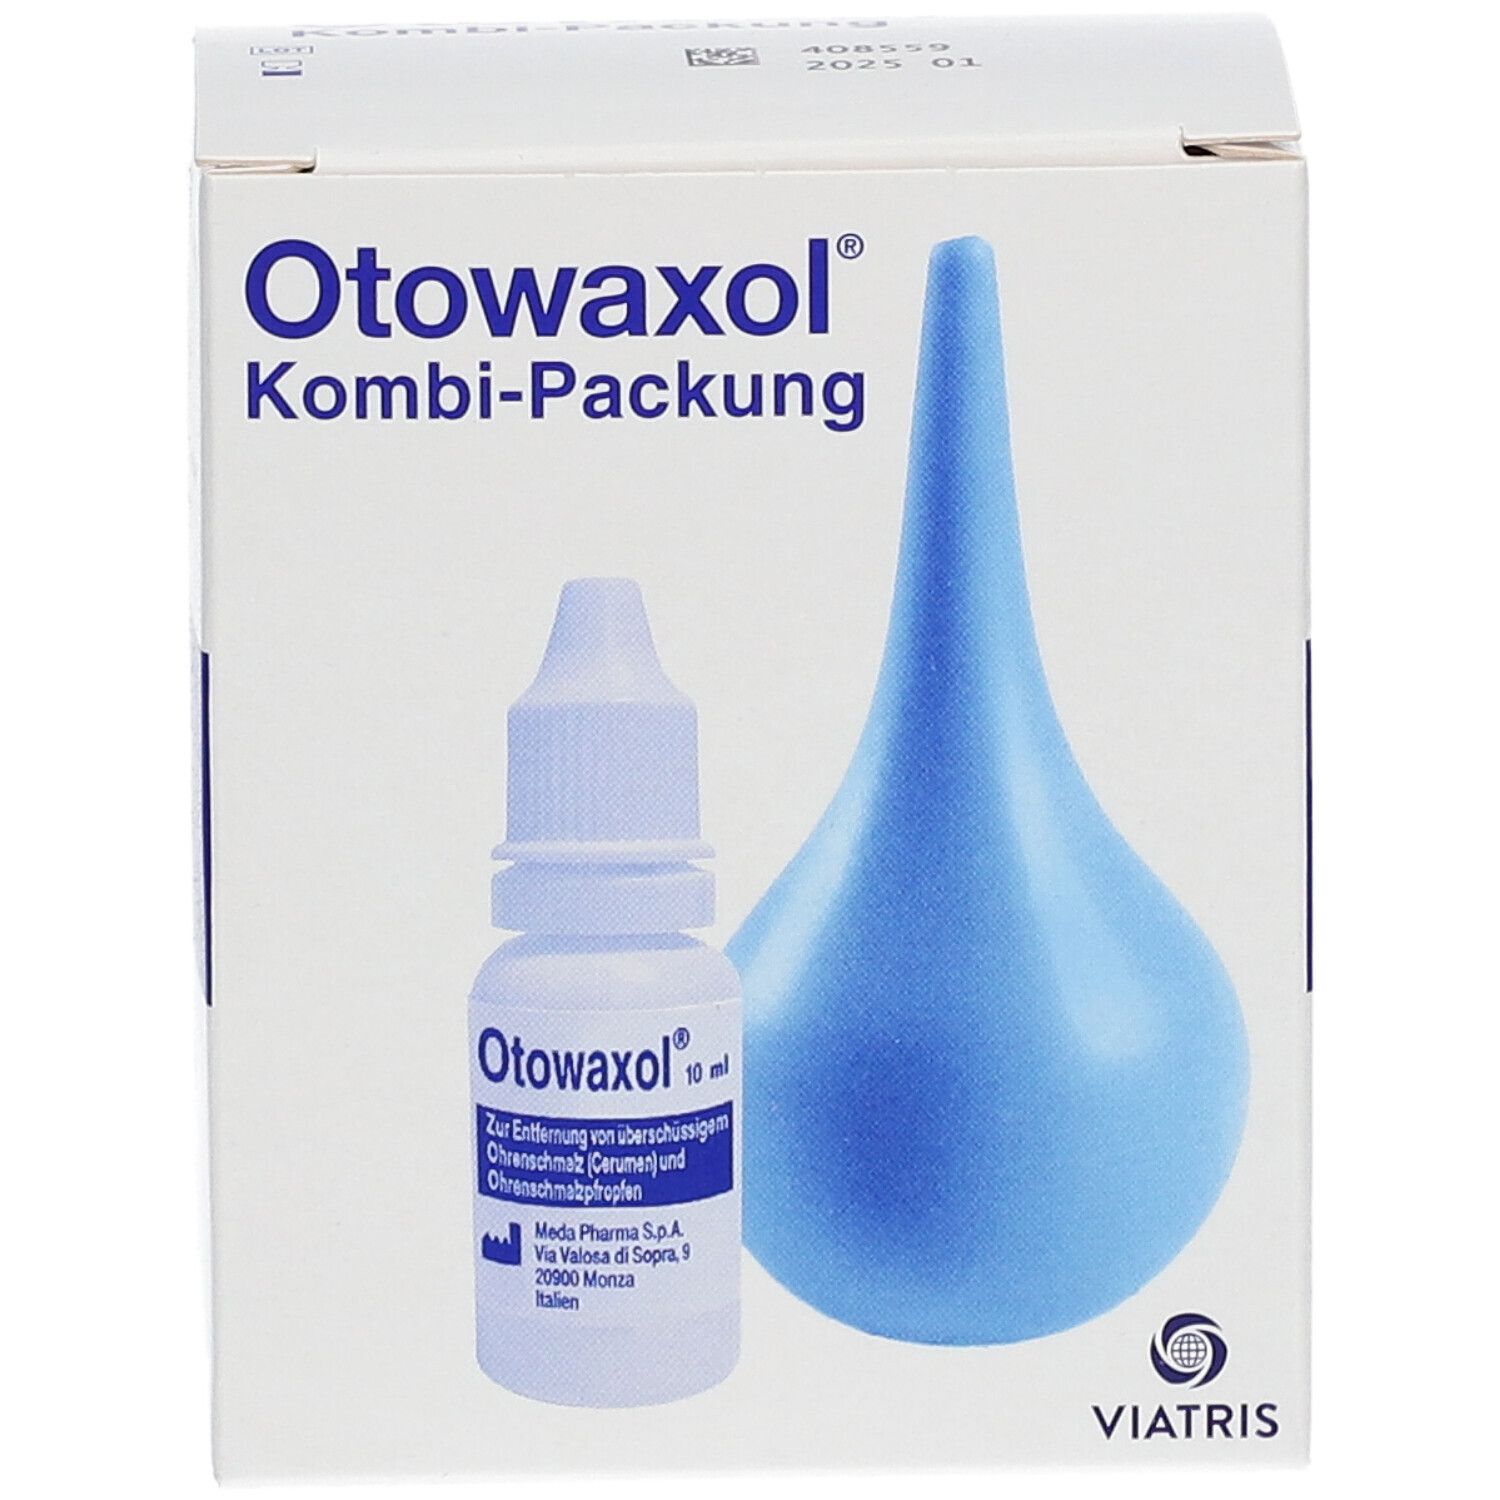 Otowaxol Kombi-Packung - Ohrenschmalzentferner zur sanften Ohrenreinigung, inkl. Ohrenspritze